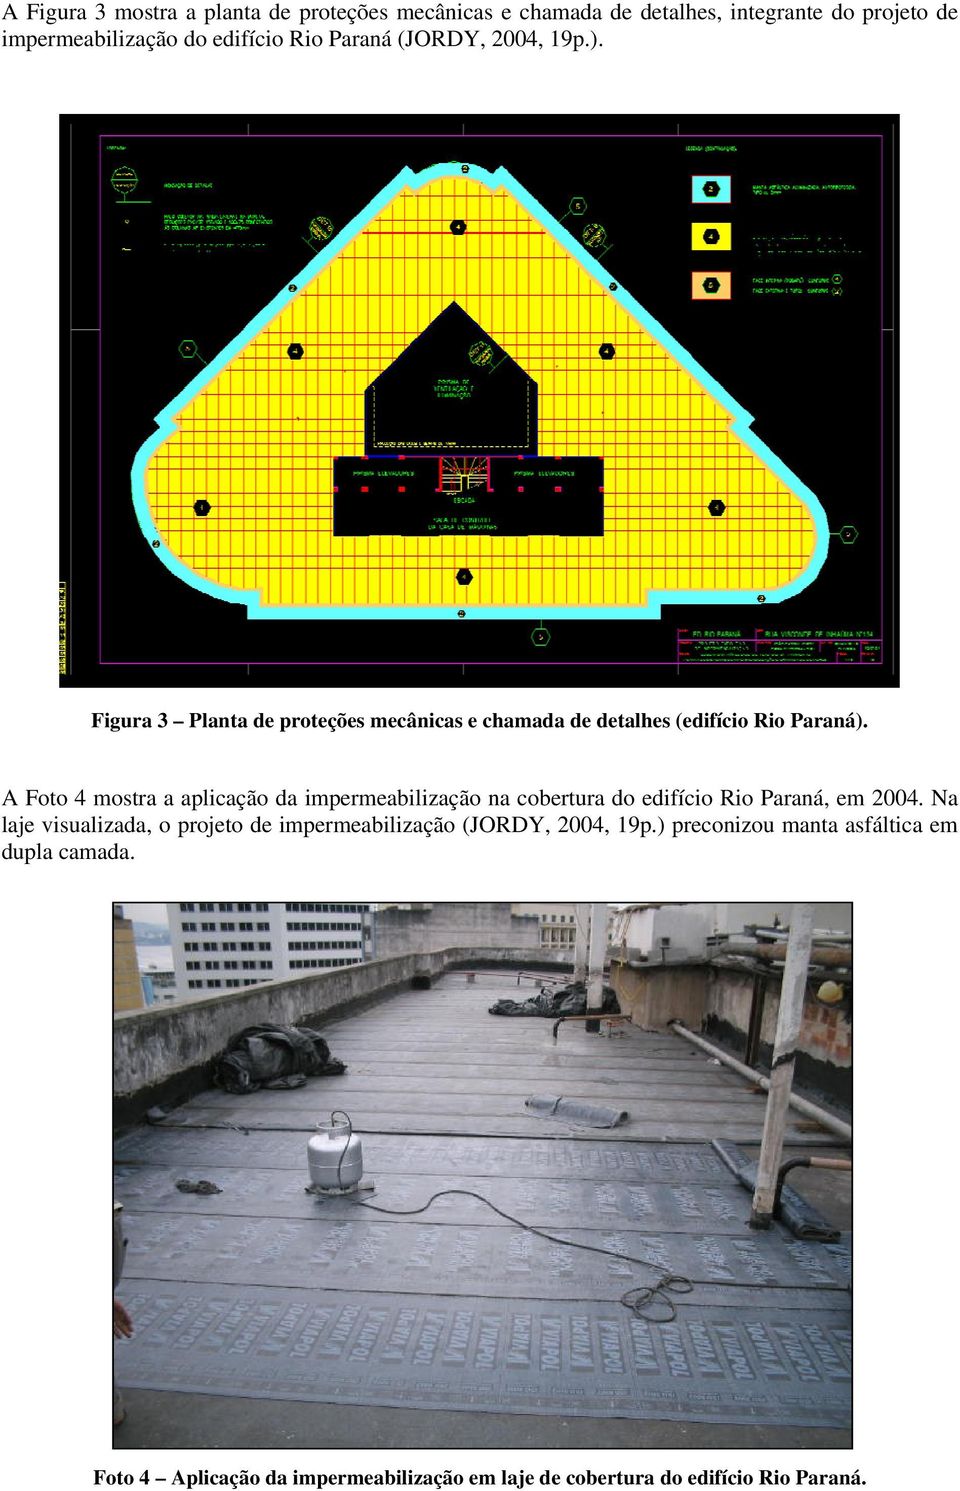 A Foto 4 mostra a aplicação da impermeabilização na cobertura do edifício Rio Paraná, em 2004.